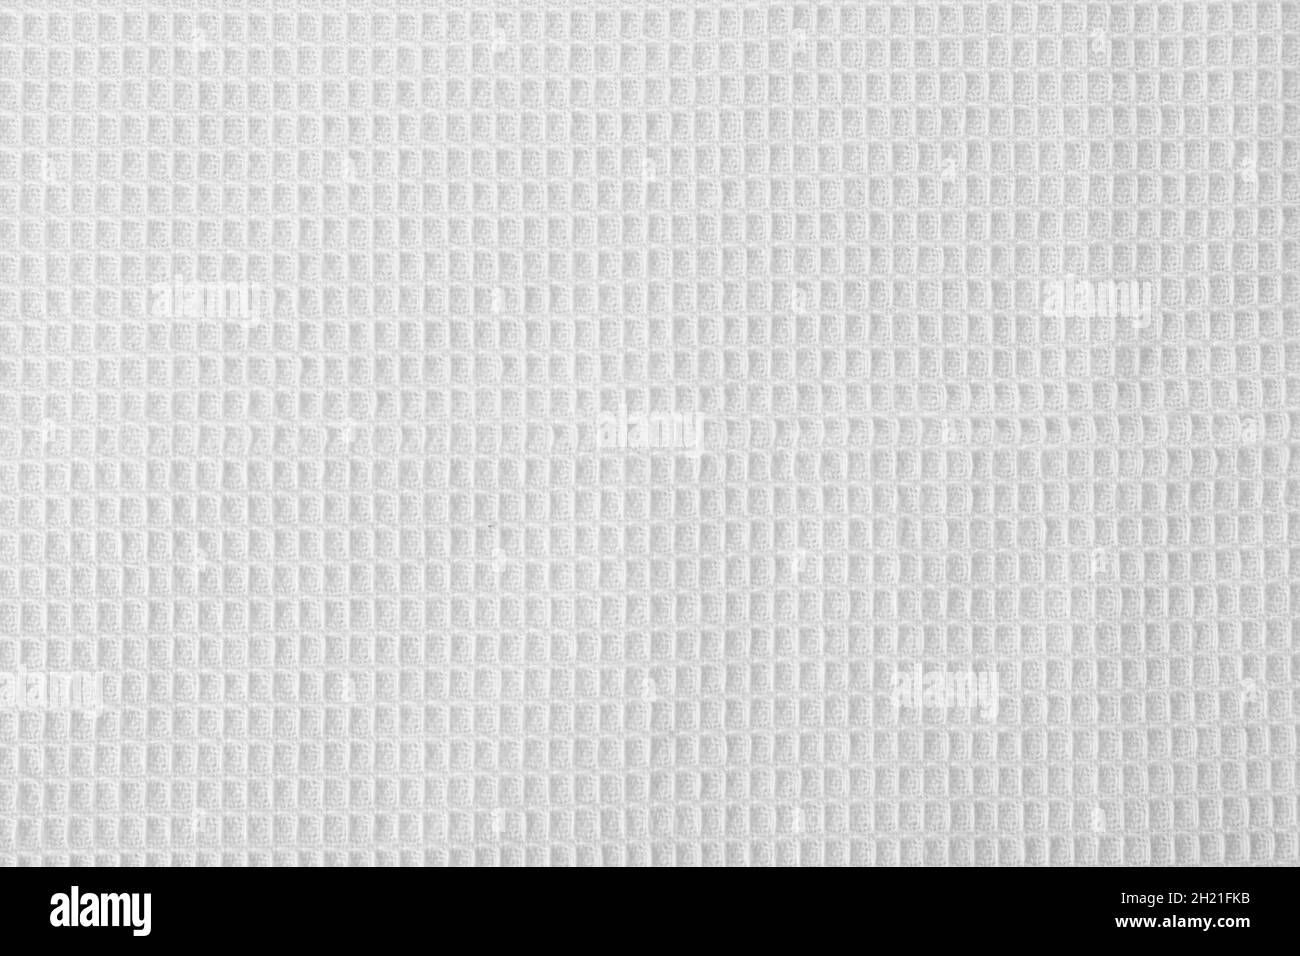 Texture of textile table napkin, closeup view Stock Photo - Alamy